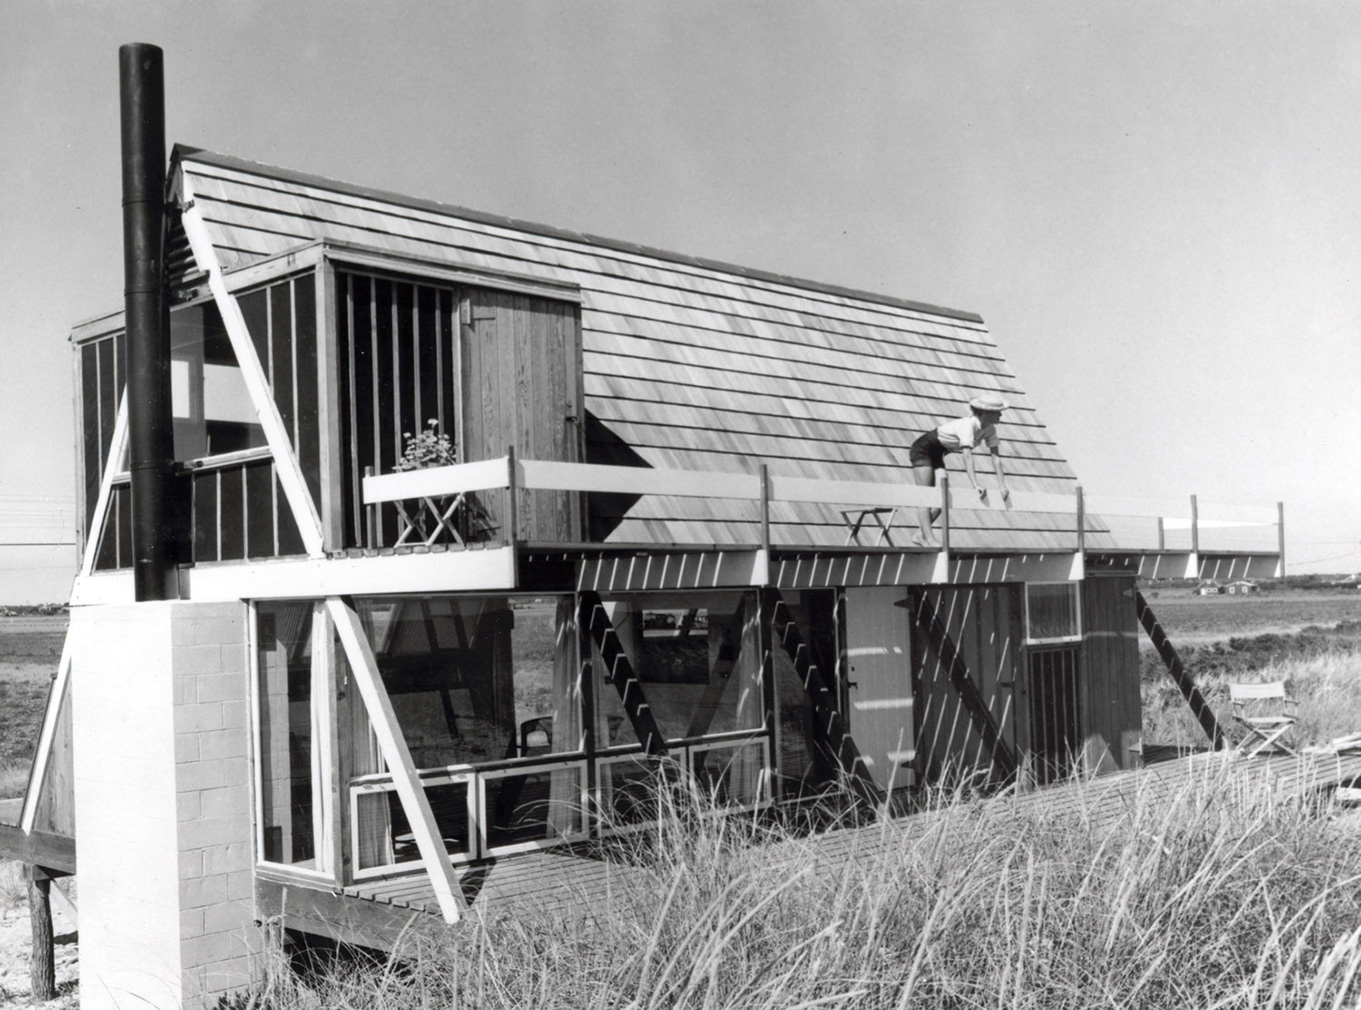 Midcentury cabins: Elizabeth Reese House by Andrew Geller